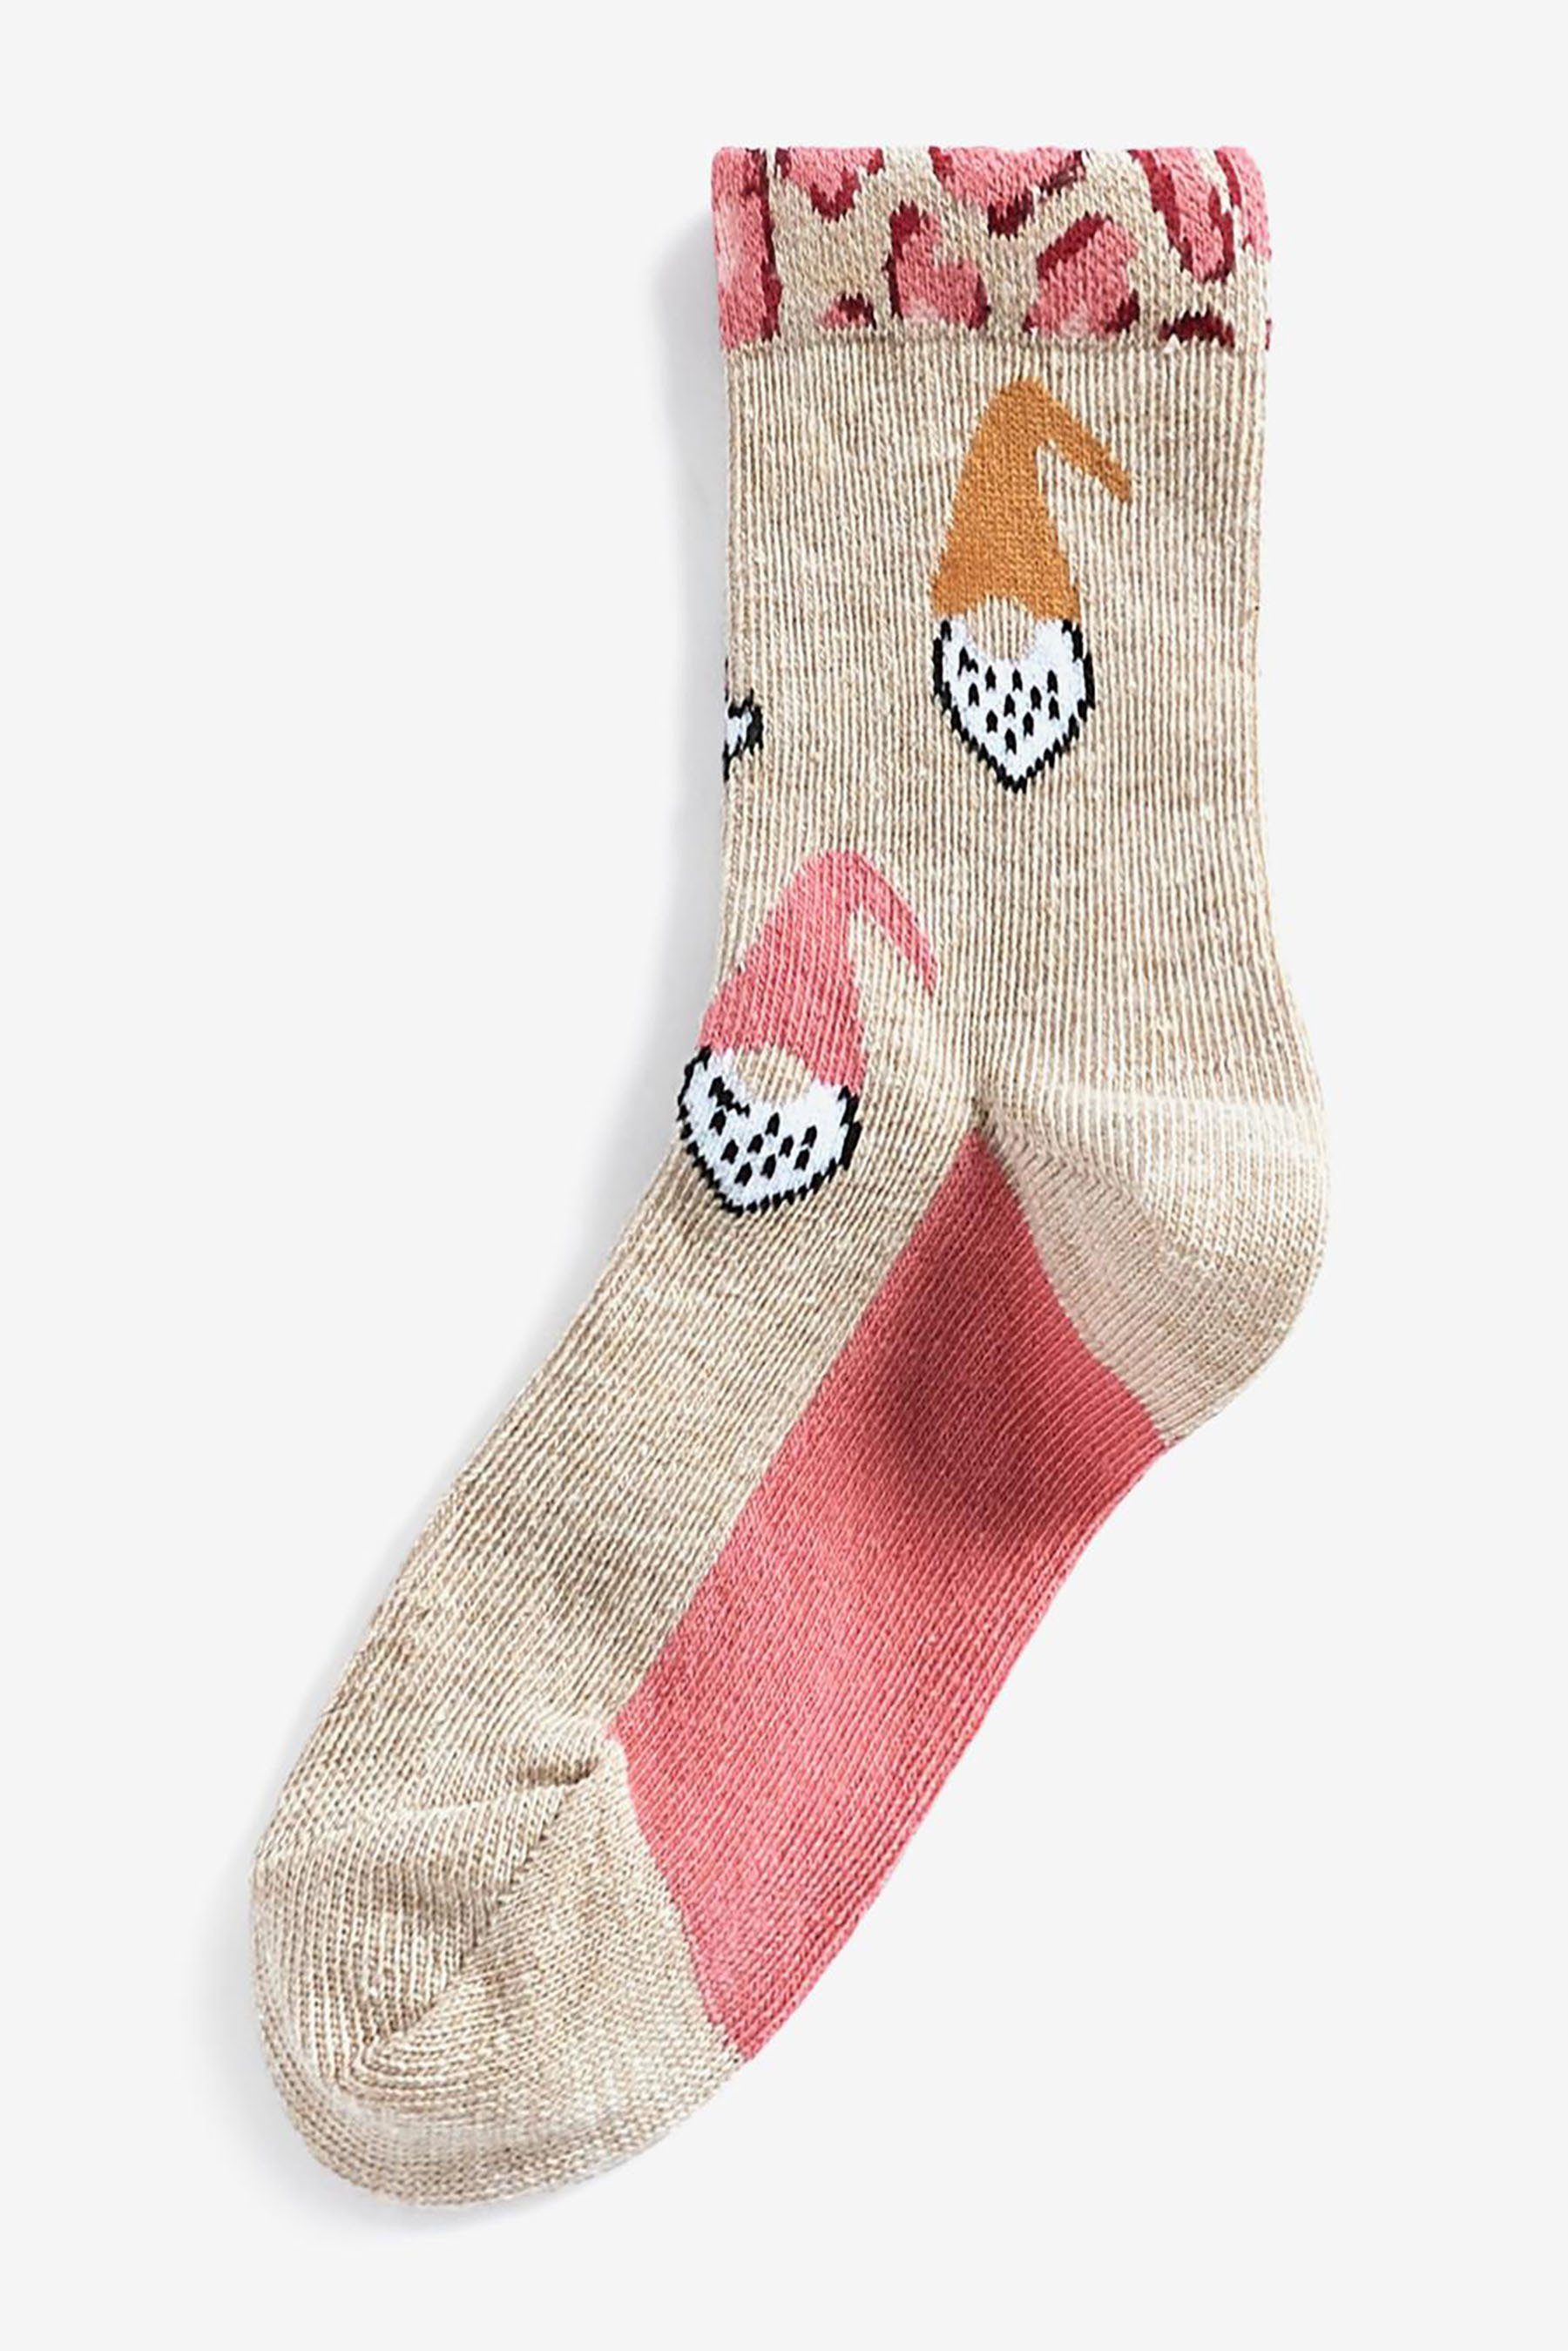 Wäsche/Bademode Socken Next Kurzsocken Wichtel-Socken für Erwachsene und Kinder